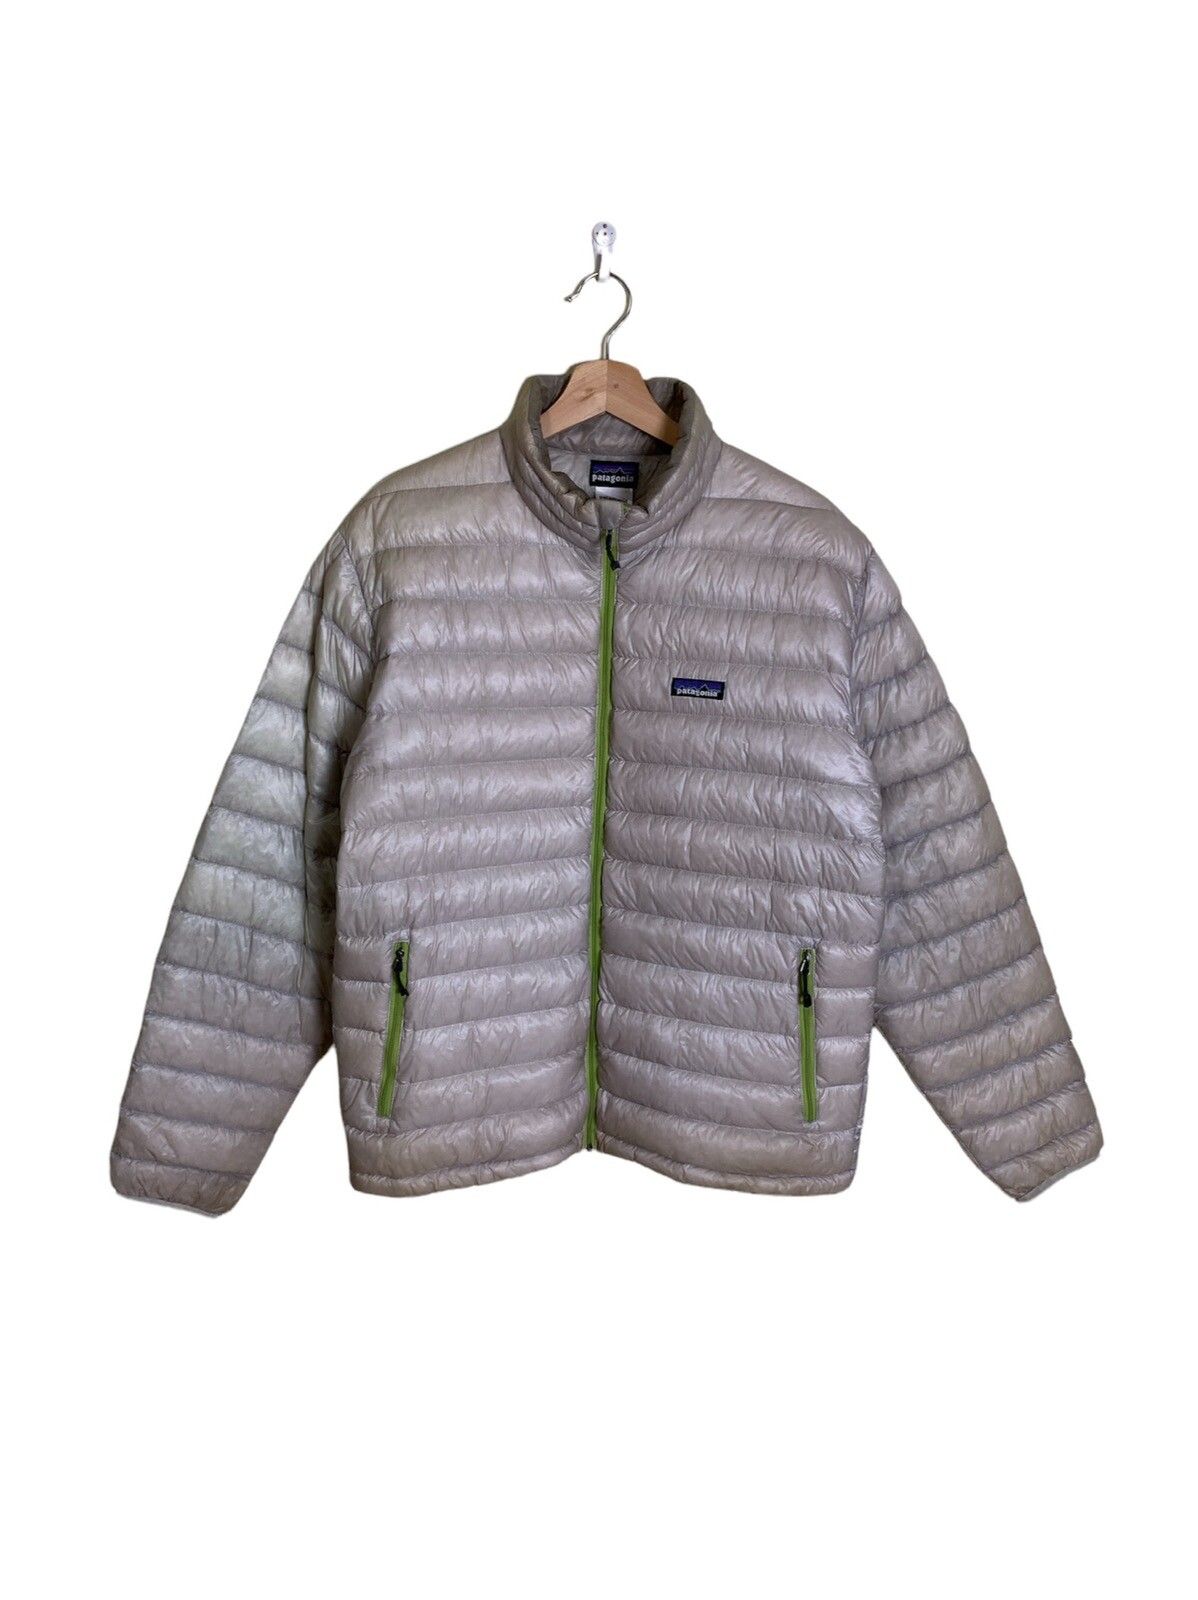 Patagonia Down Sweater Jacket - 1